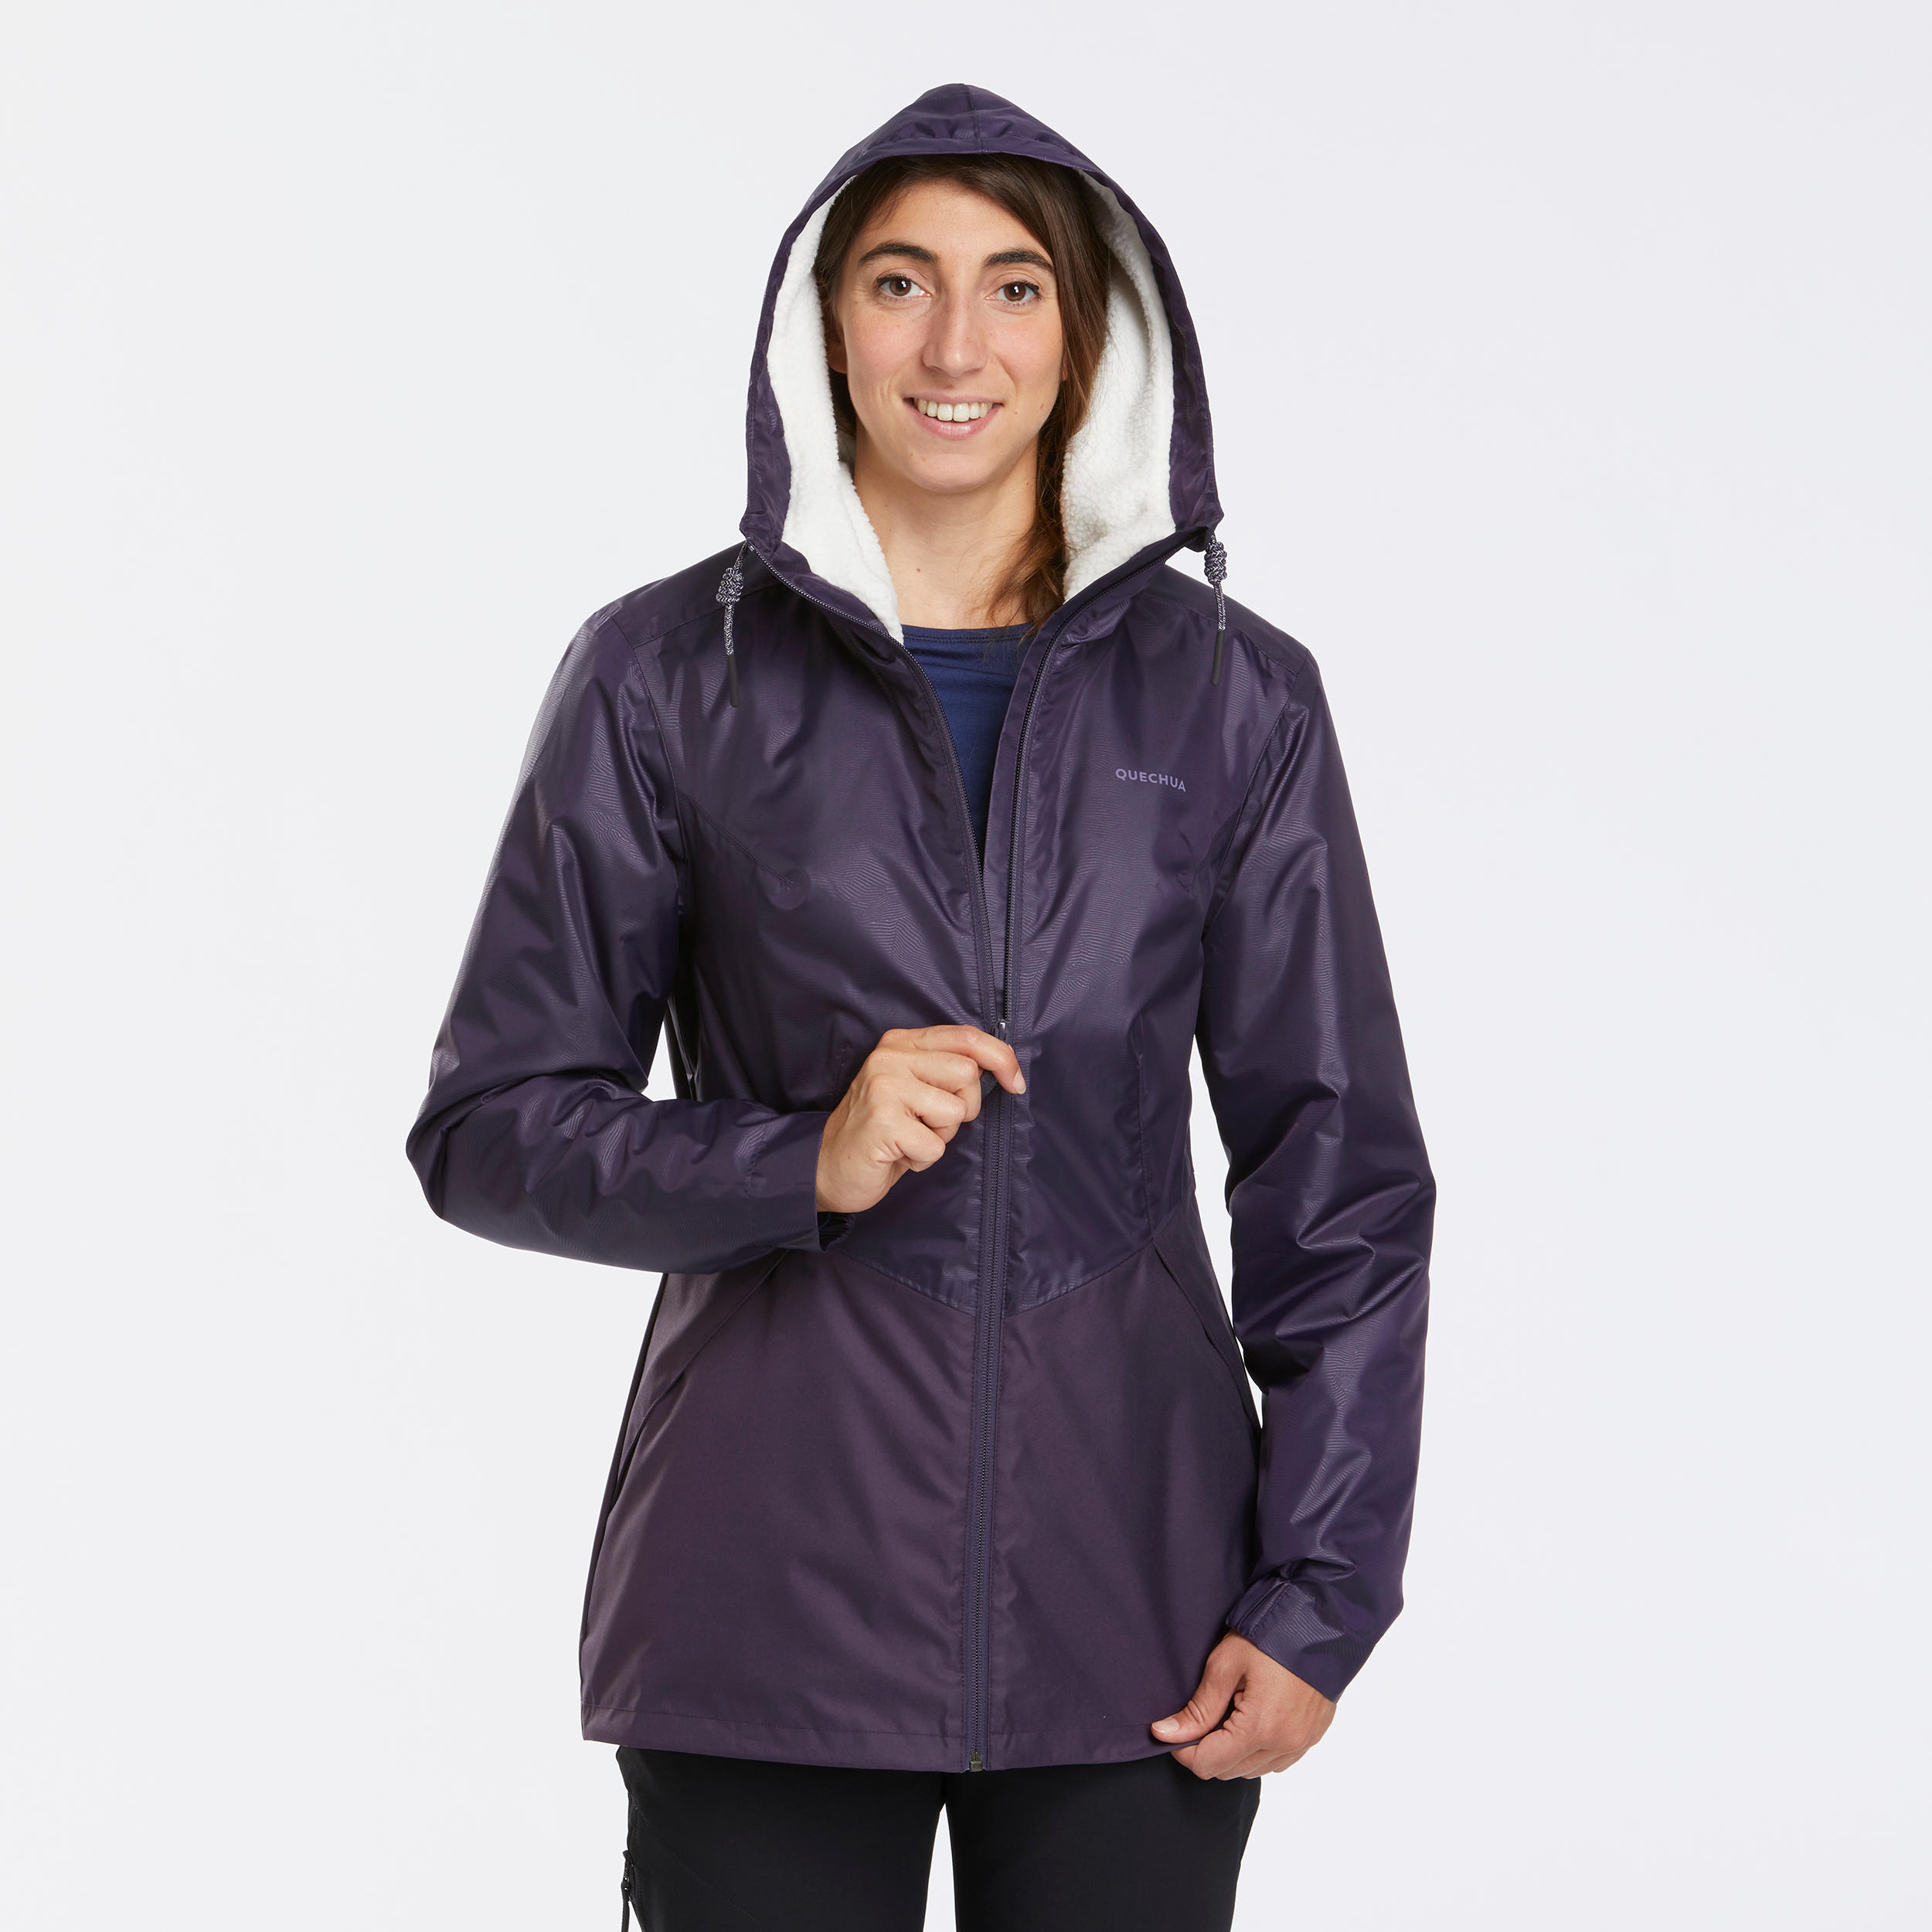 Women’s waterproof winter hiking jacket - SH100 -5°C 6/10